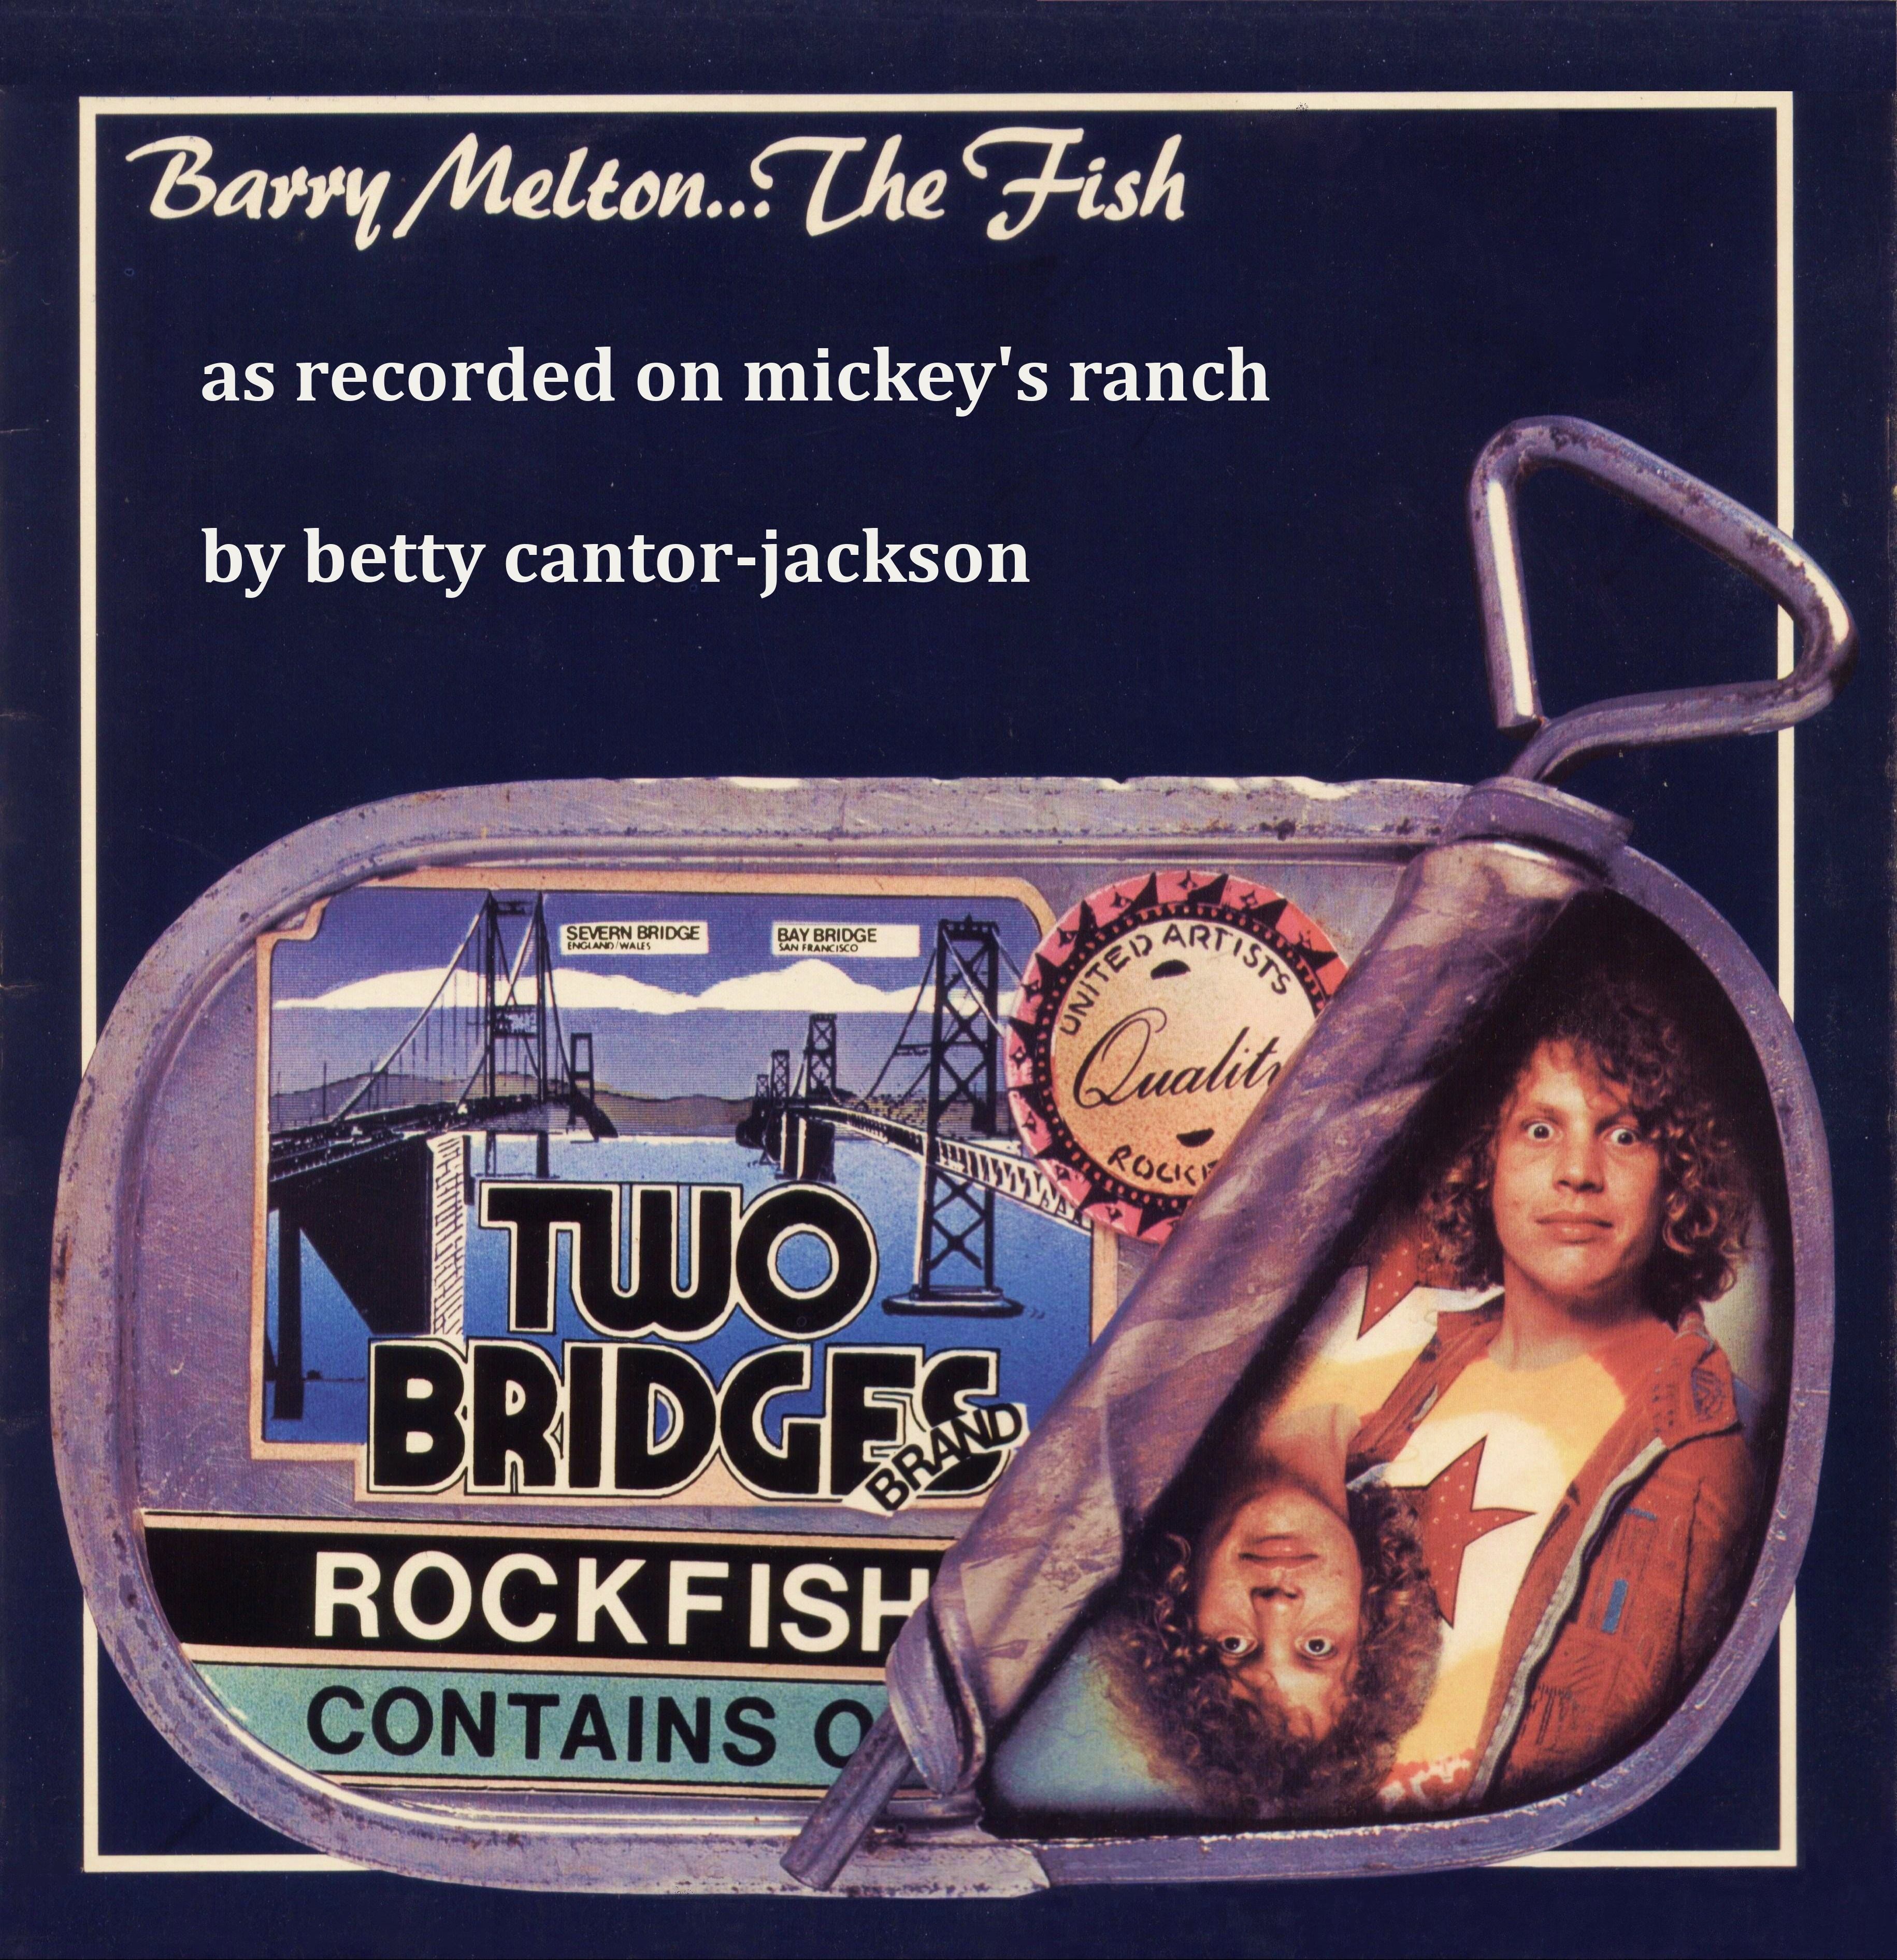 BarryMelton1973-1974UnreleasedFishAlbumMickeyHartsRanchNovatoCA (1).jpg